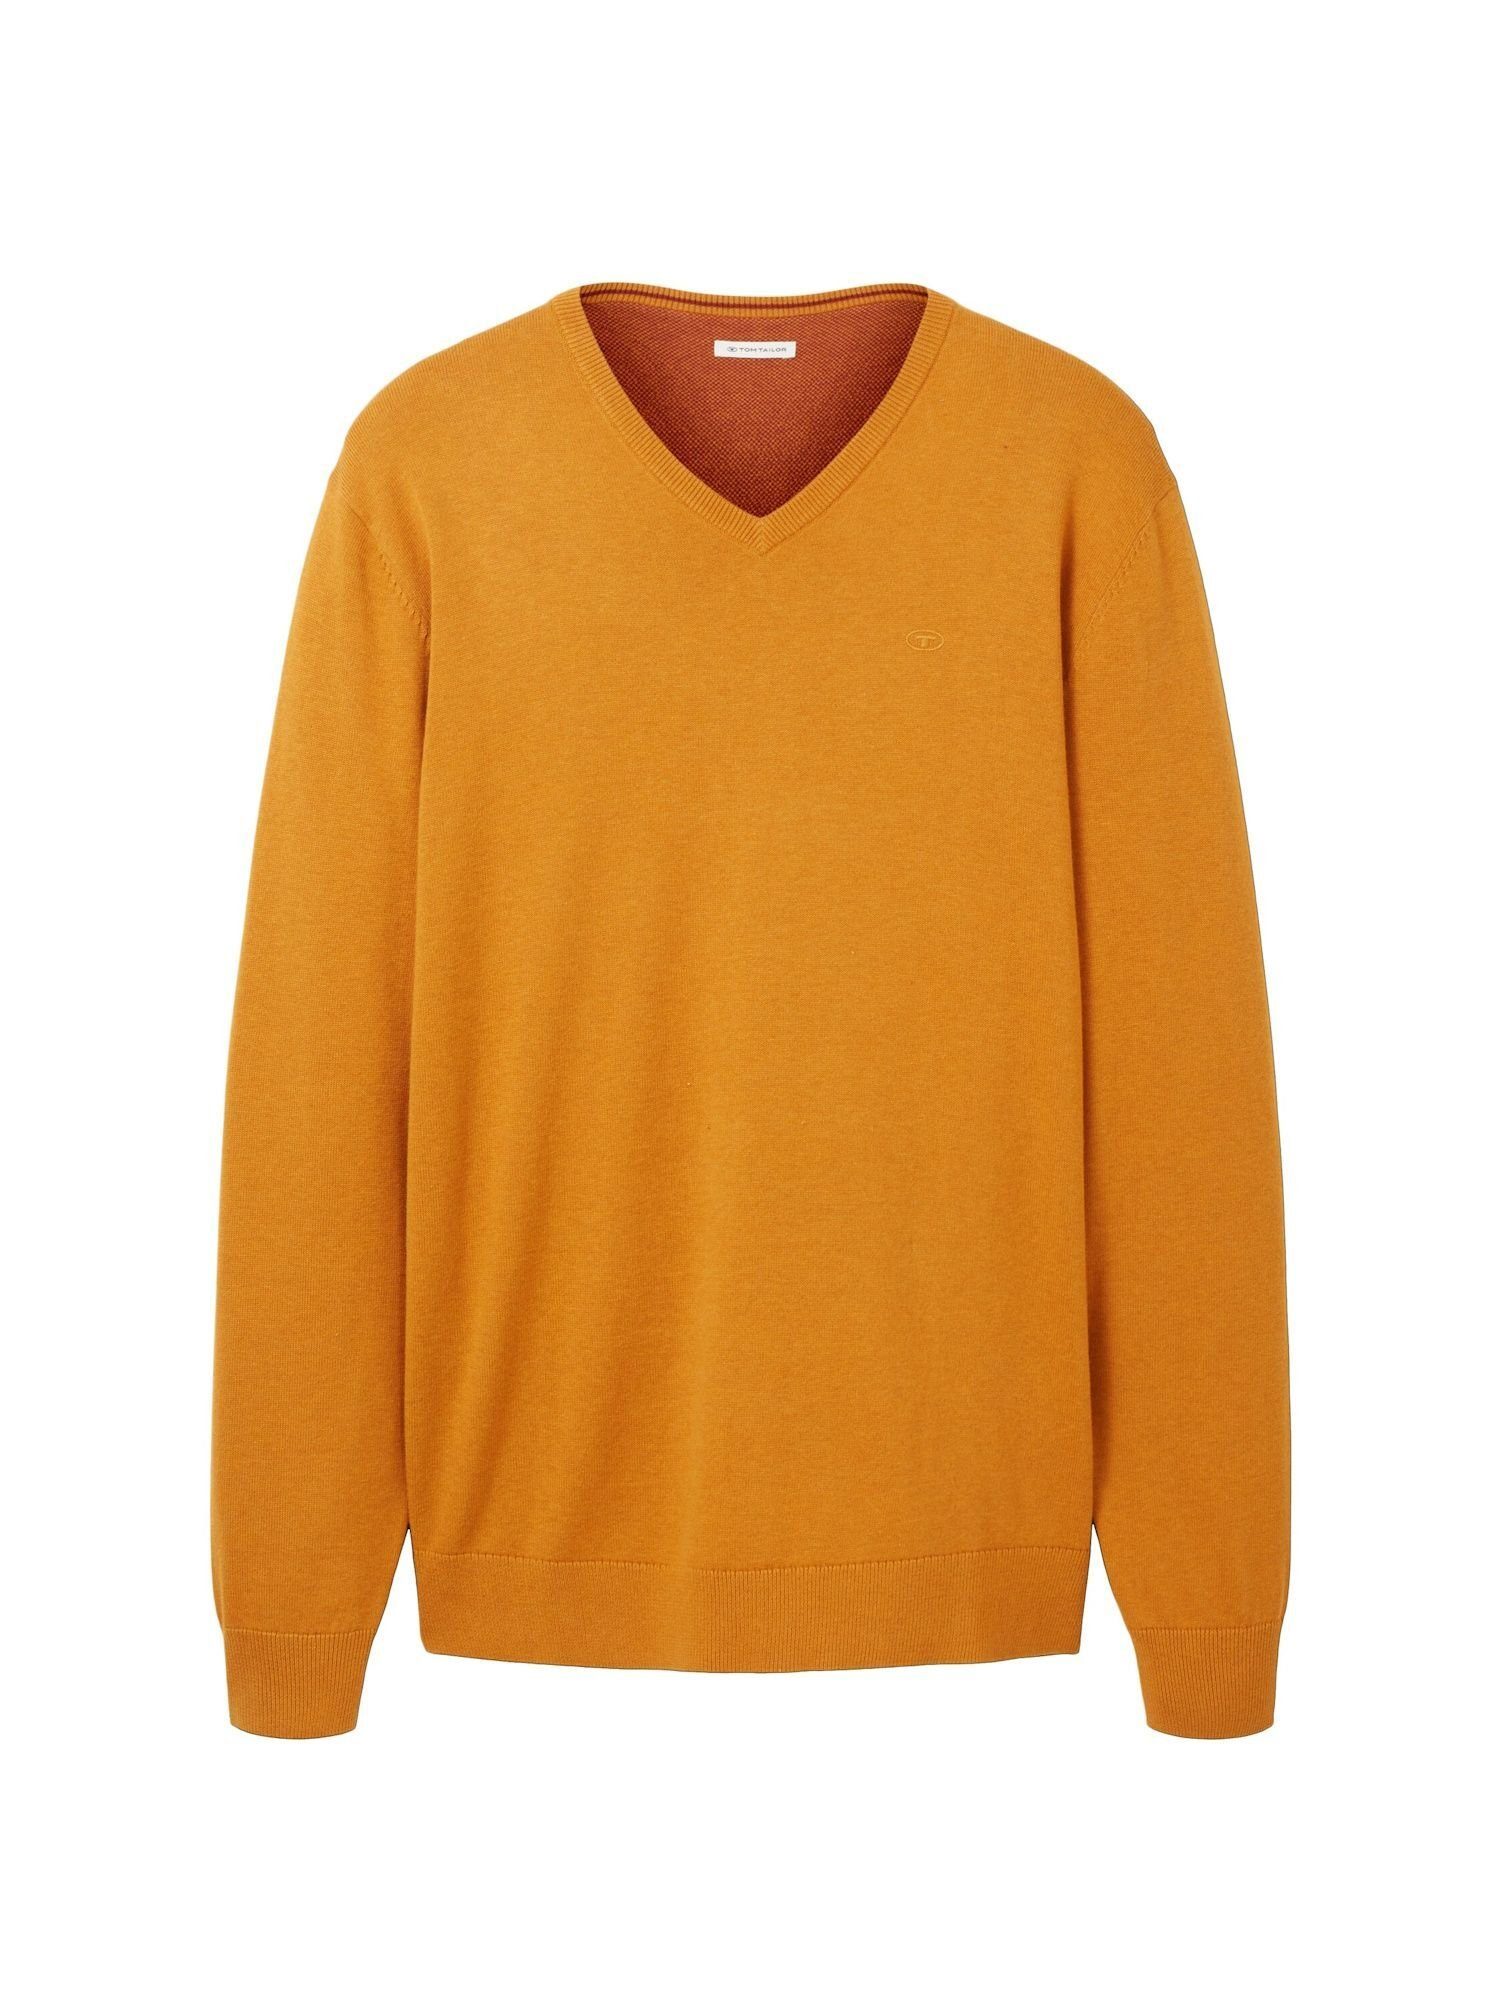 mit orange TAILOR TOM Rippbündchen Sweatshirt (1-tlg) Sweatshirt Pullover meliert